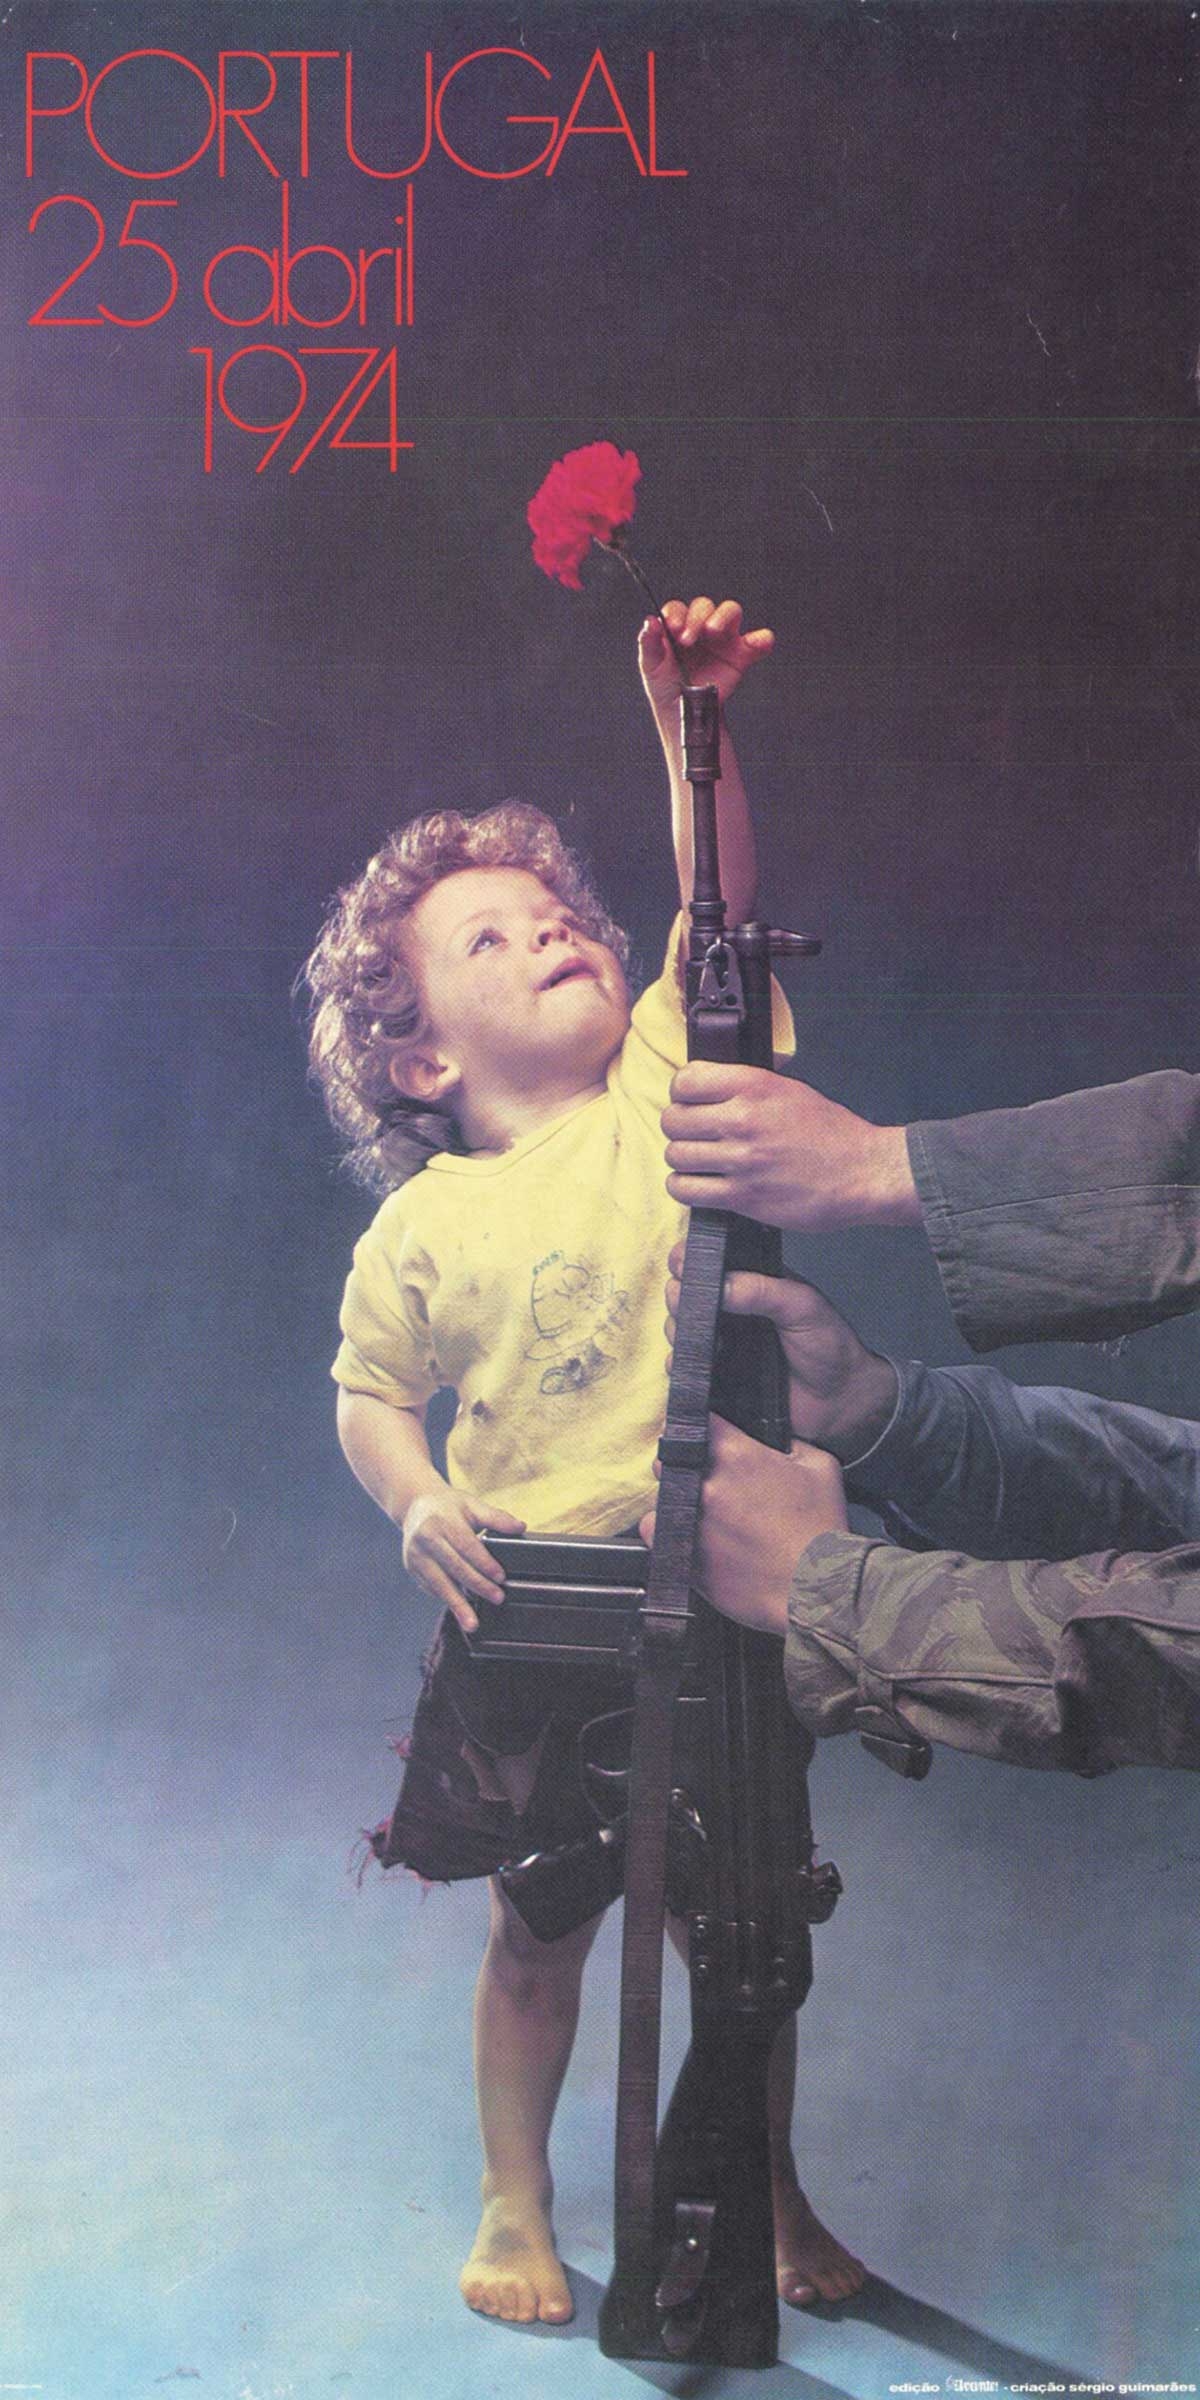 Poster zur Erinnerung an die Nelkenrevolution, 1974